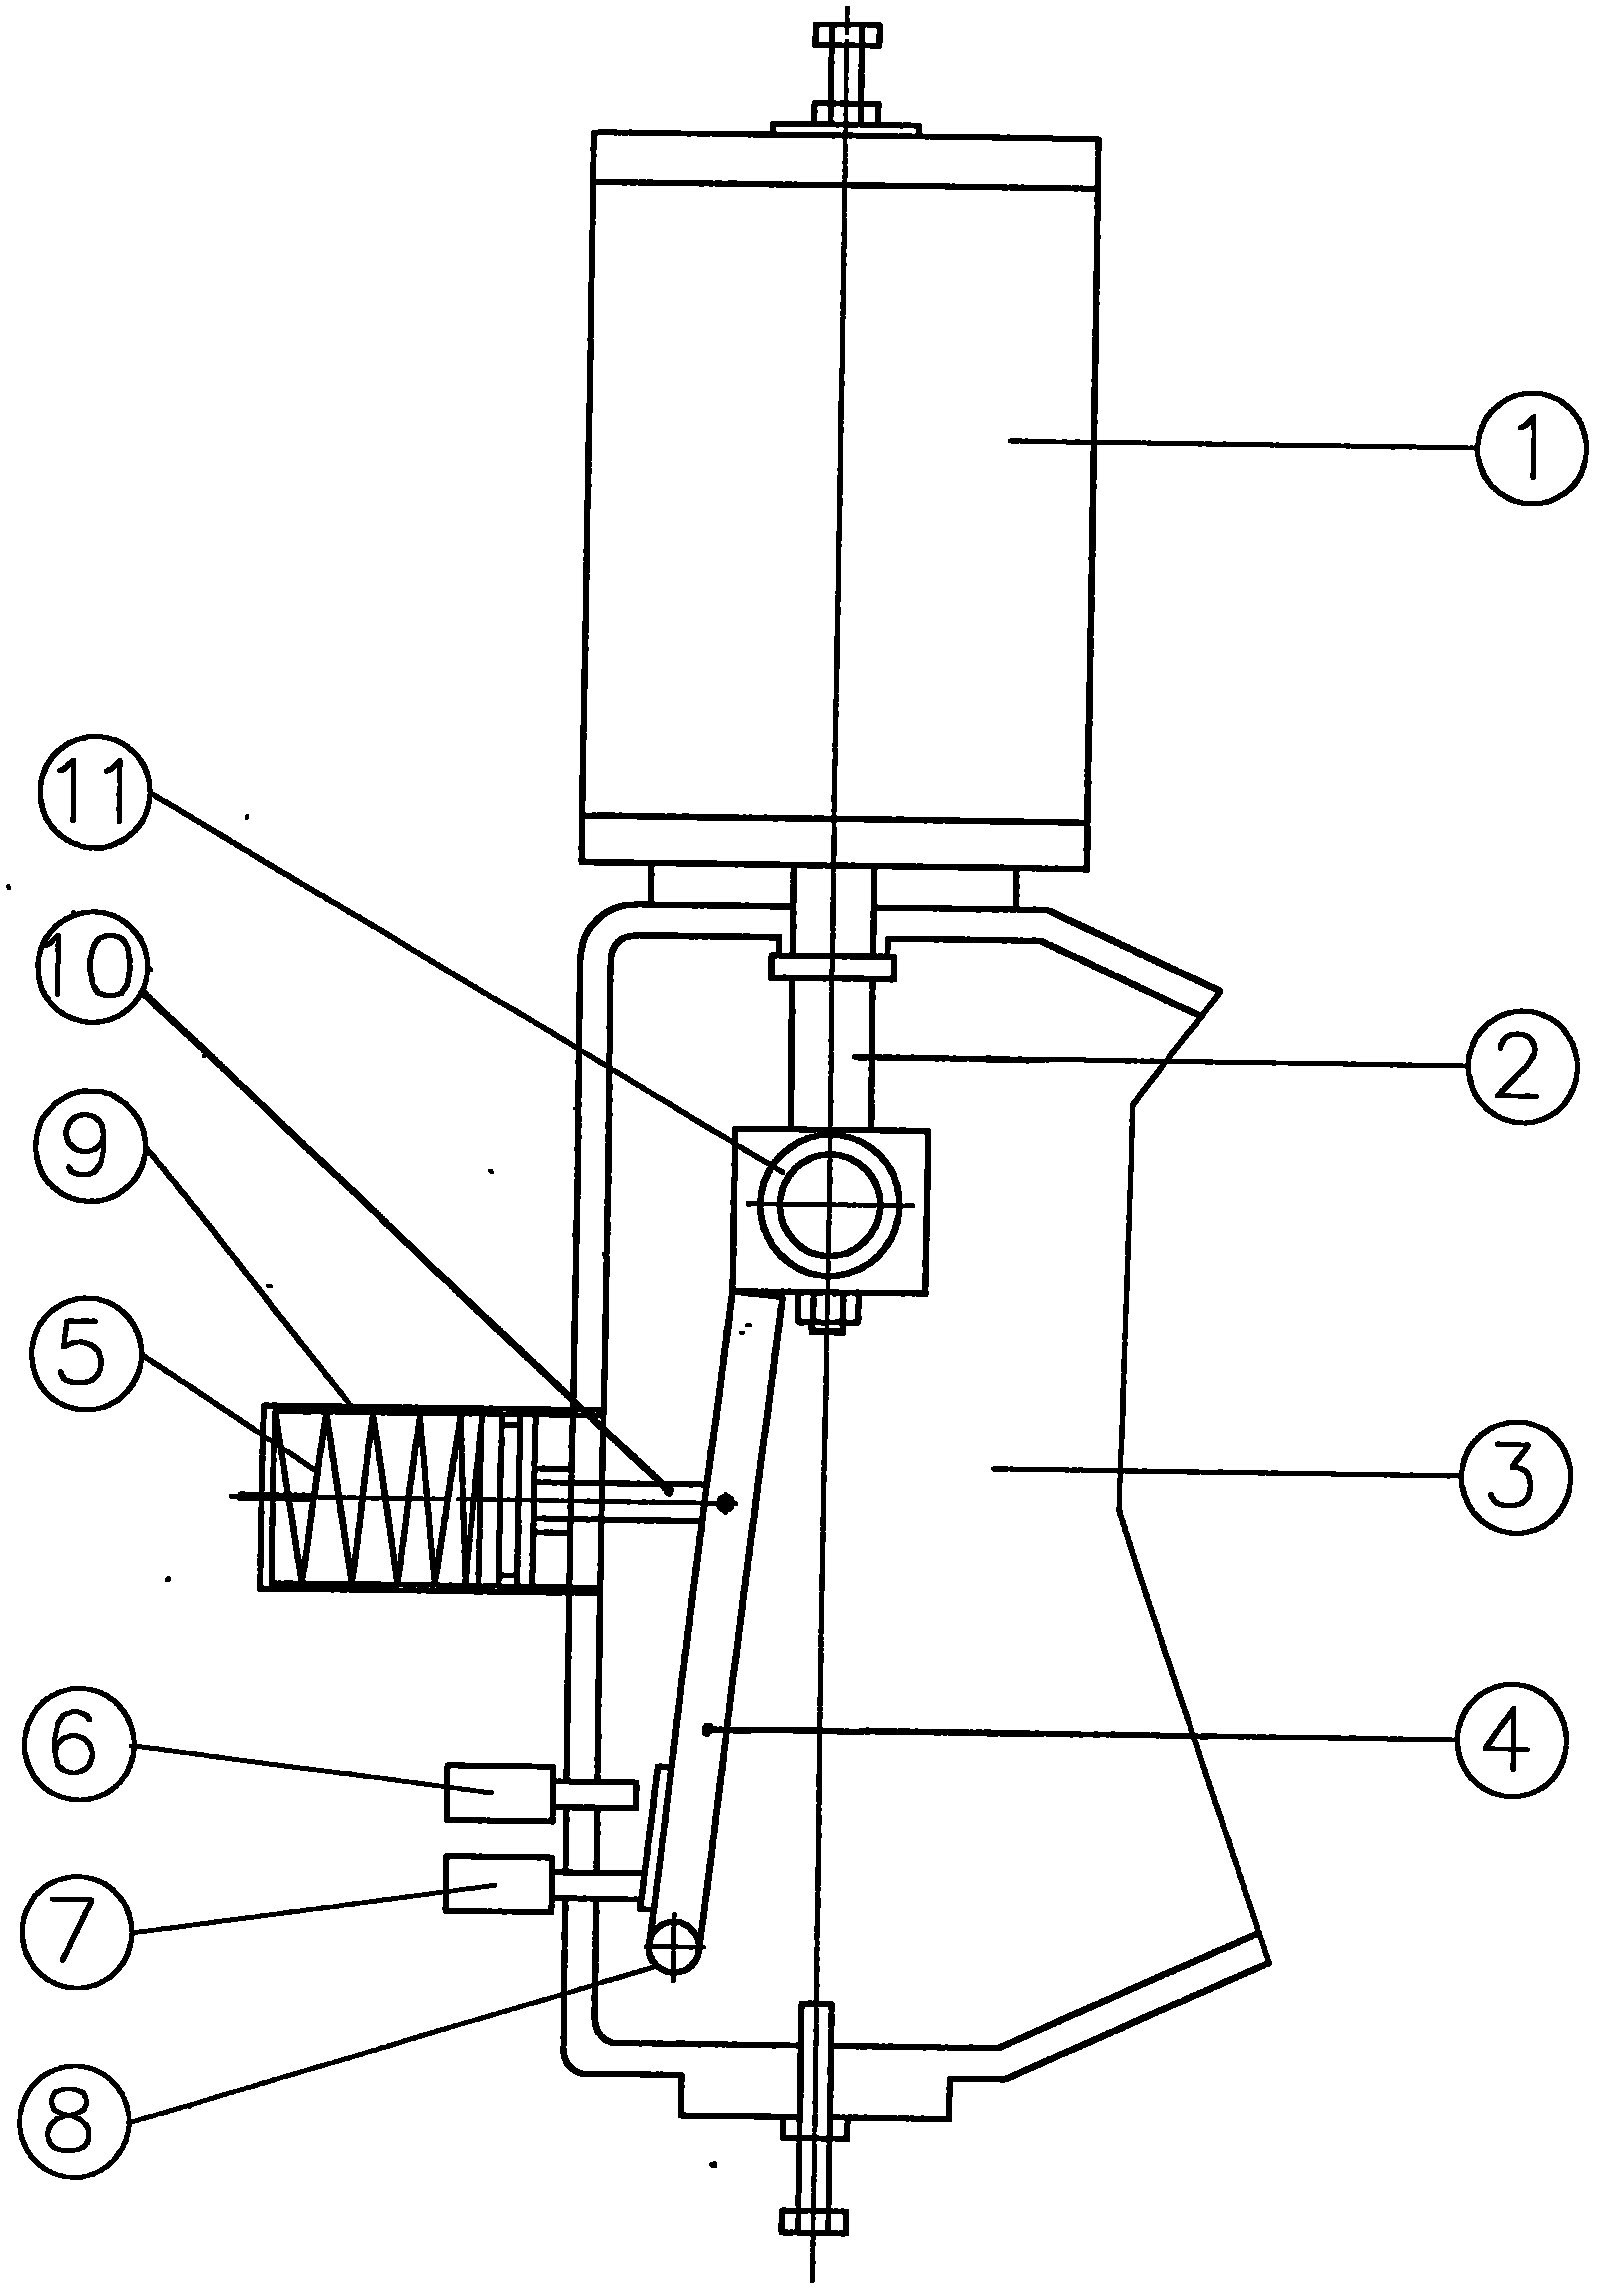 Pneumatic actuator of valve